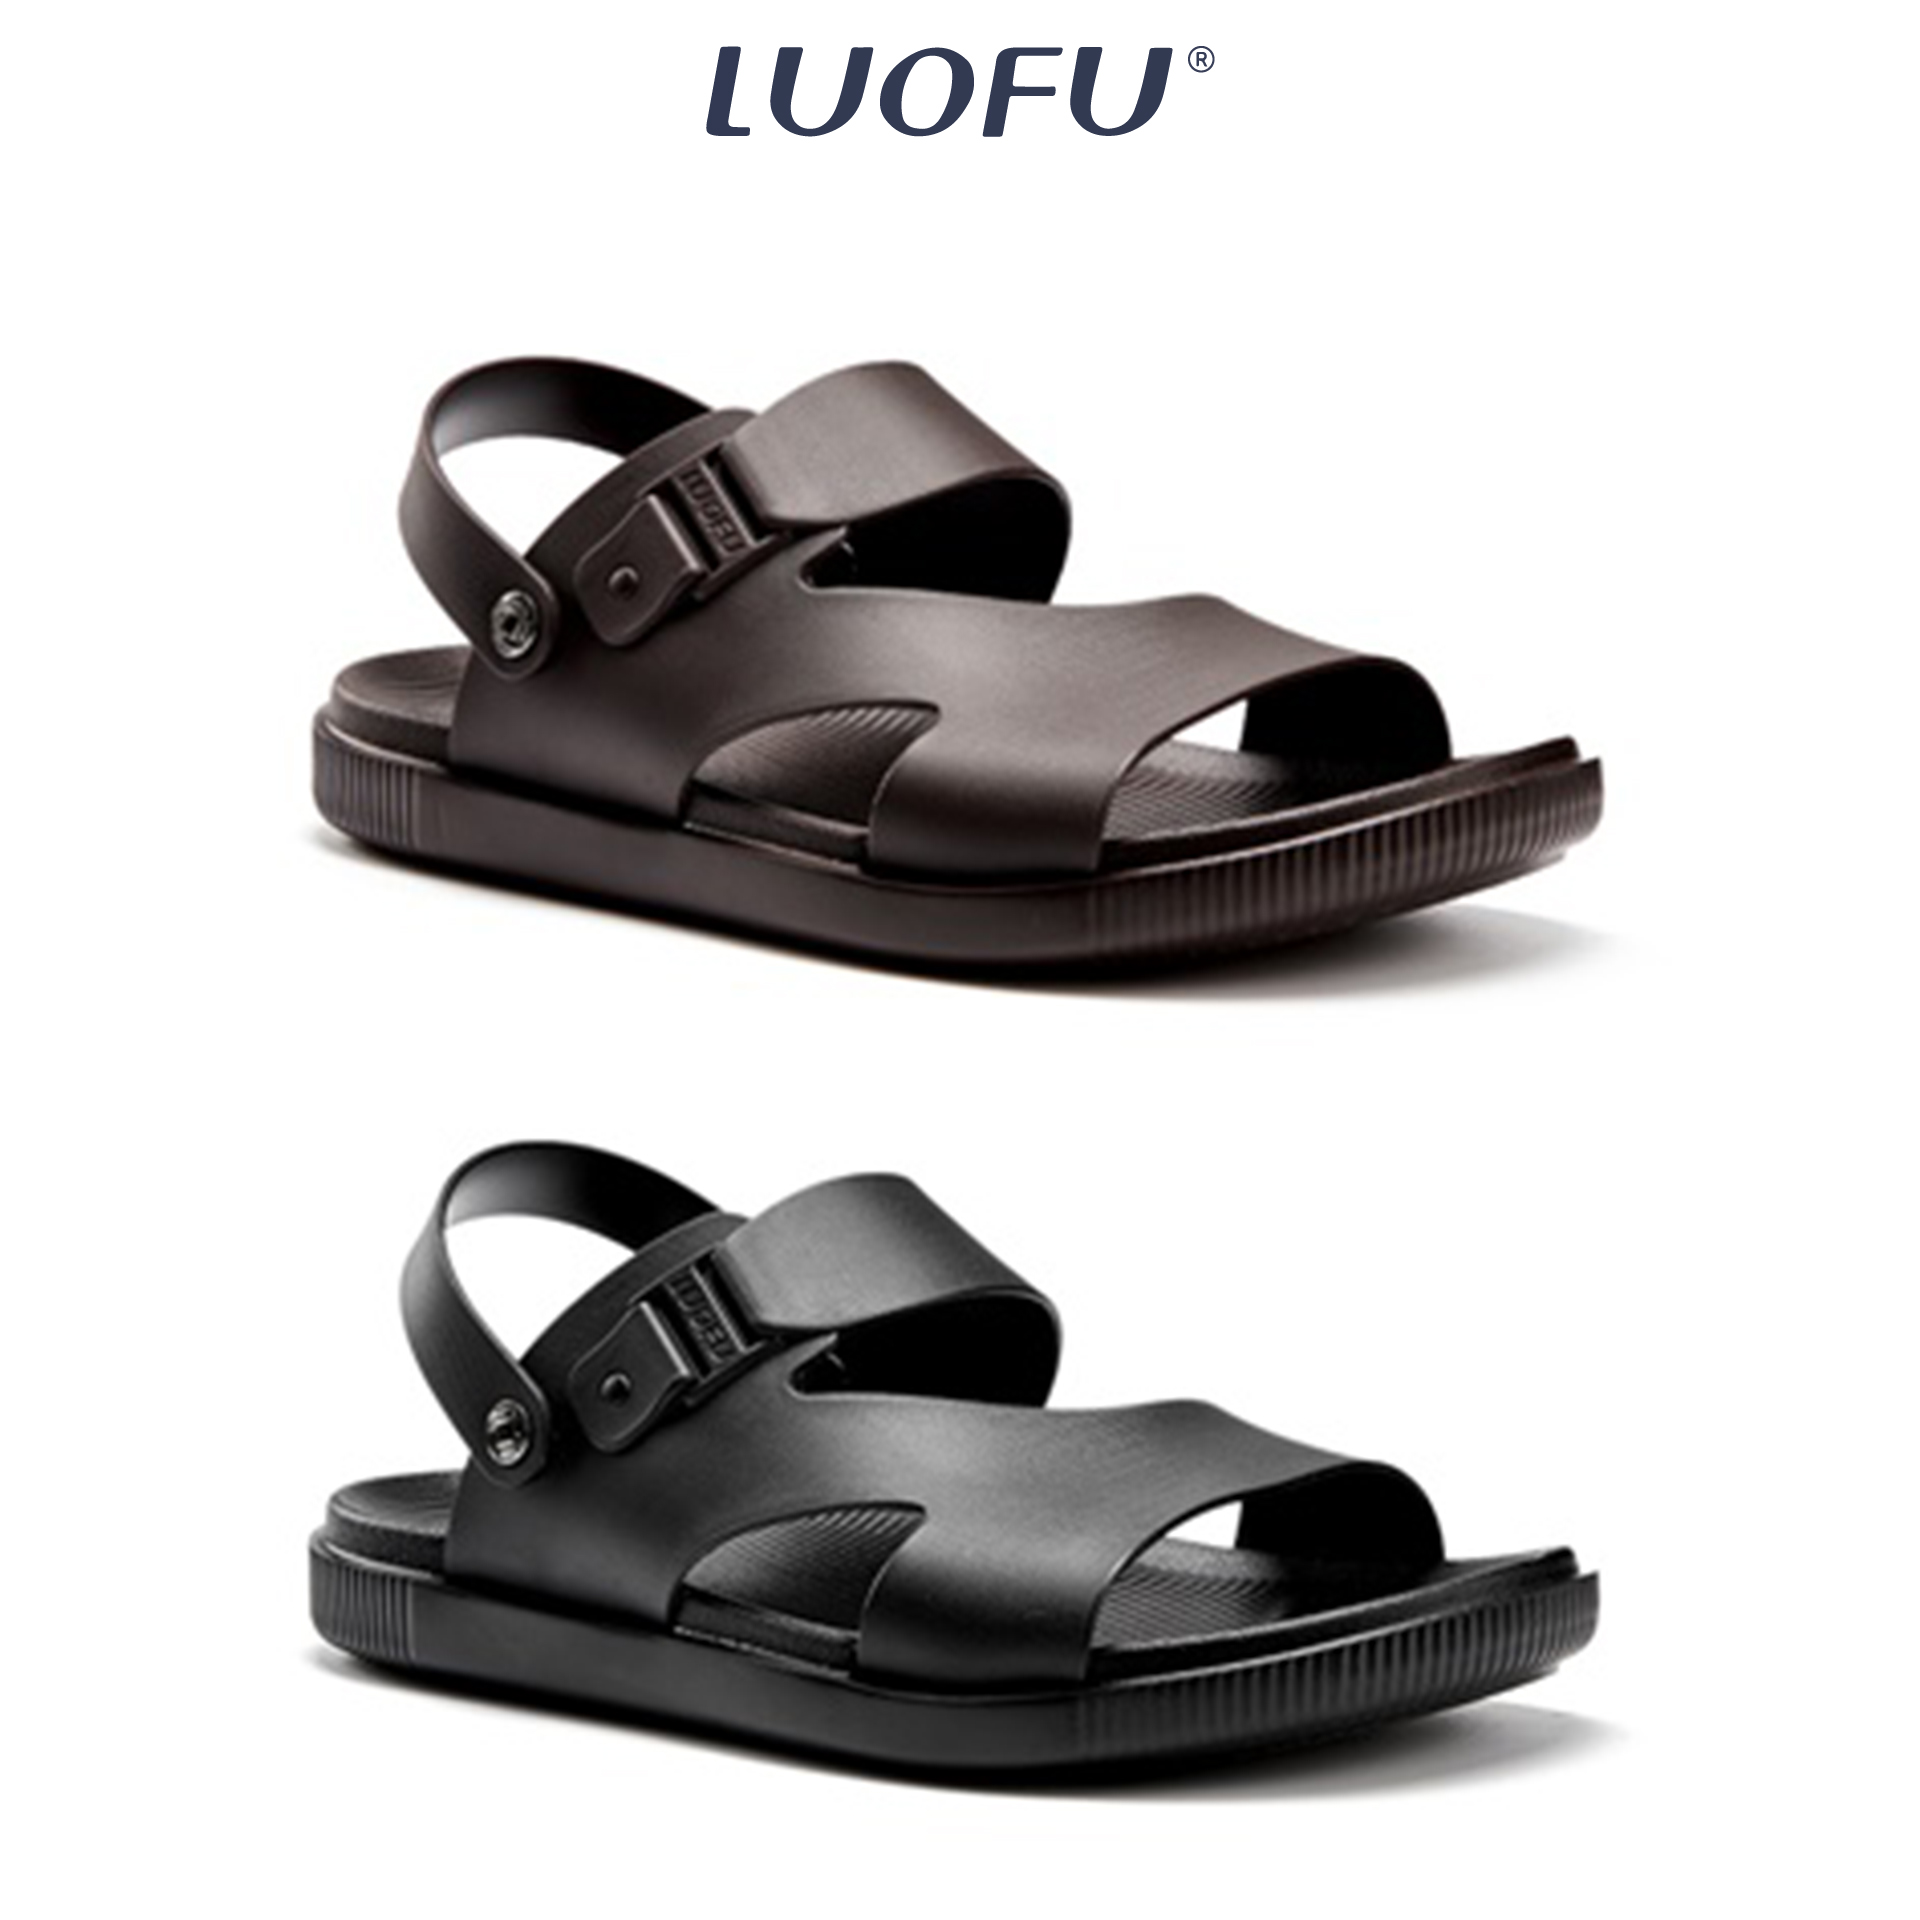 LUOFU รองเท้ารัดส้น ผู้ชาย รองเท้าแตะ แบบสวม แฟชั่น สวมใส่สบาย เบอร์40-44 รหัส E6215B-2